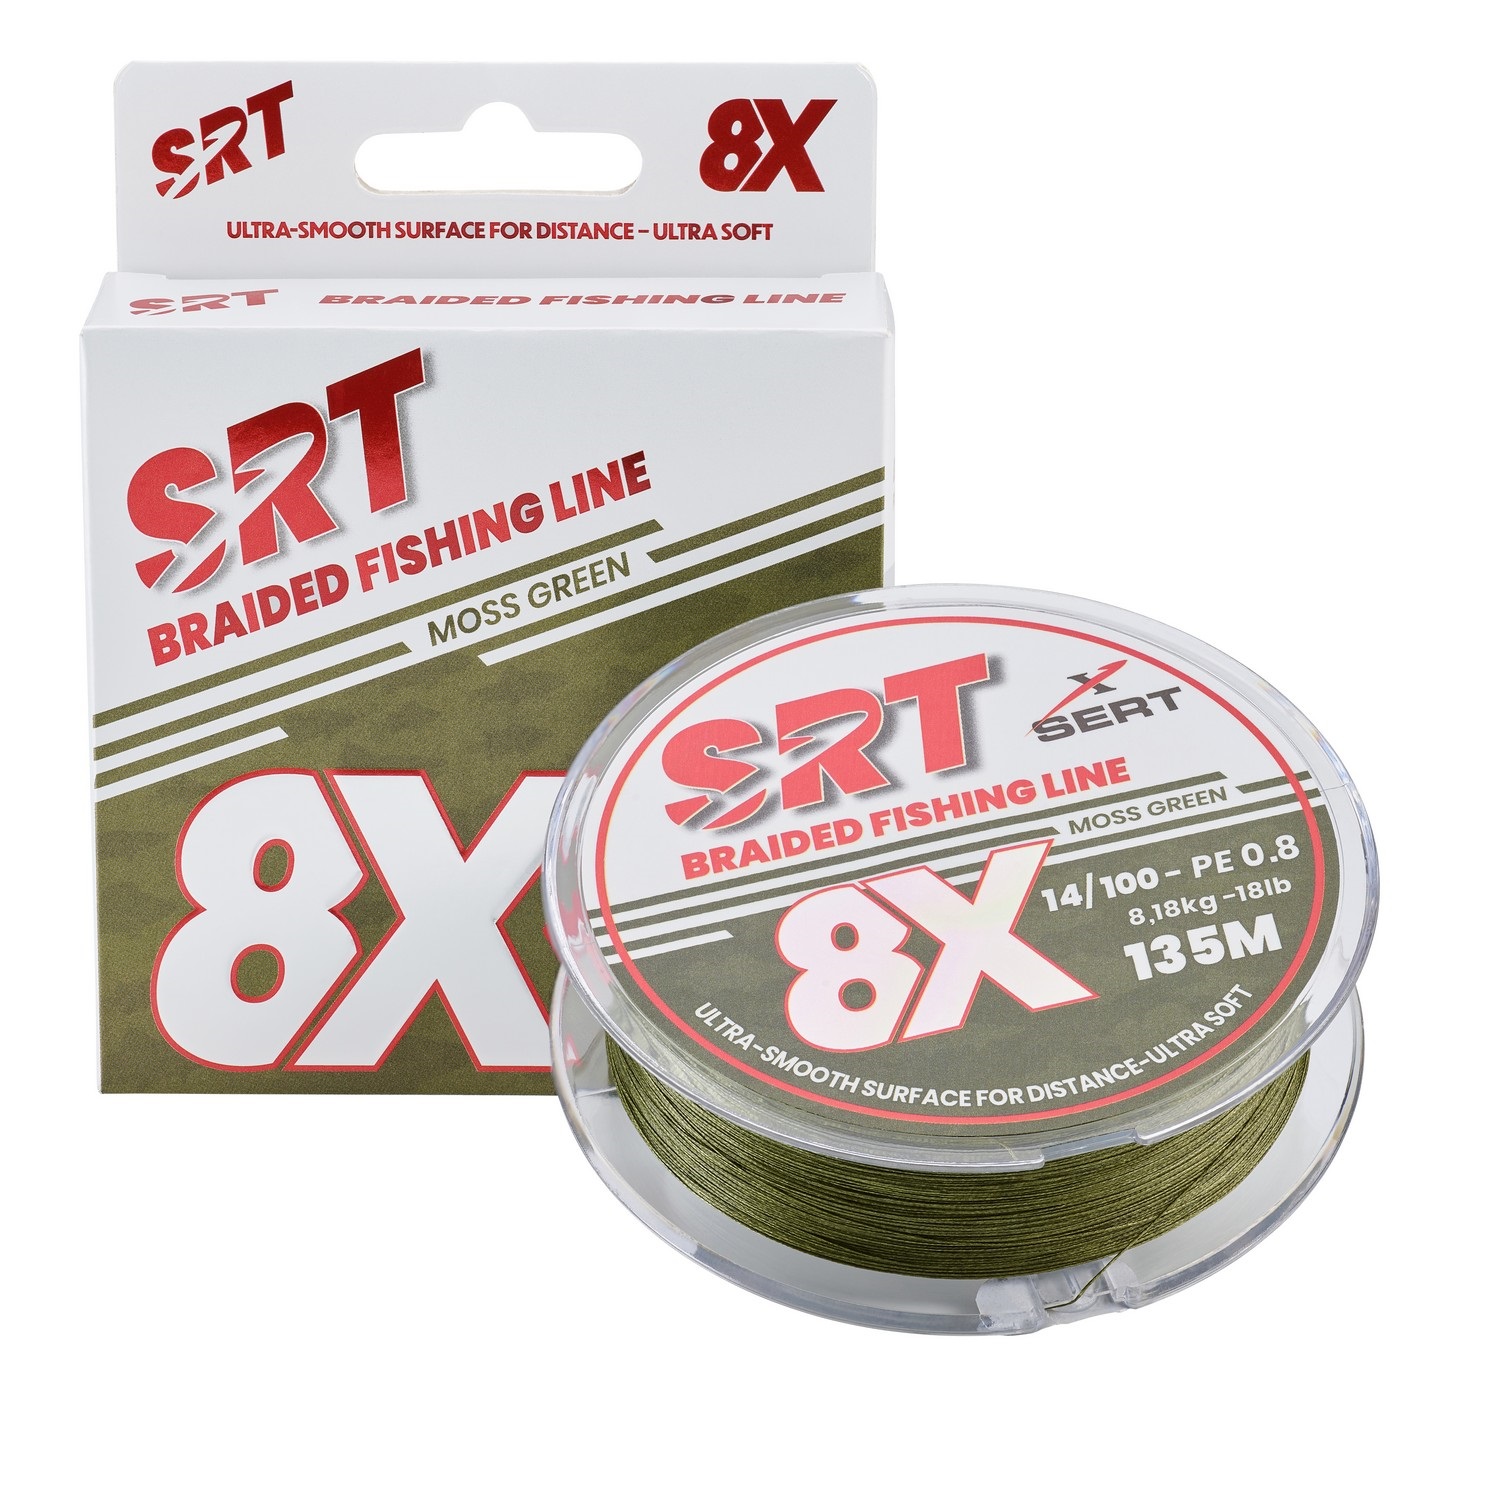 Sert splétaná šnůra 4X SRT Moss Green 135M|0,18mm/10,0kg